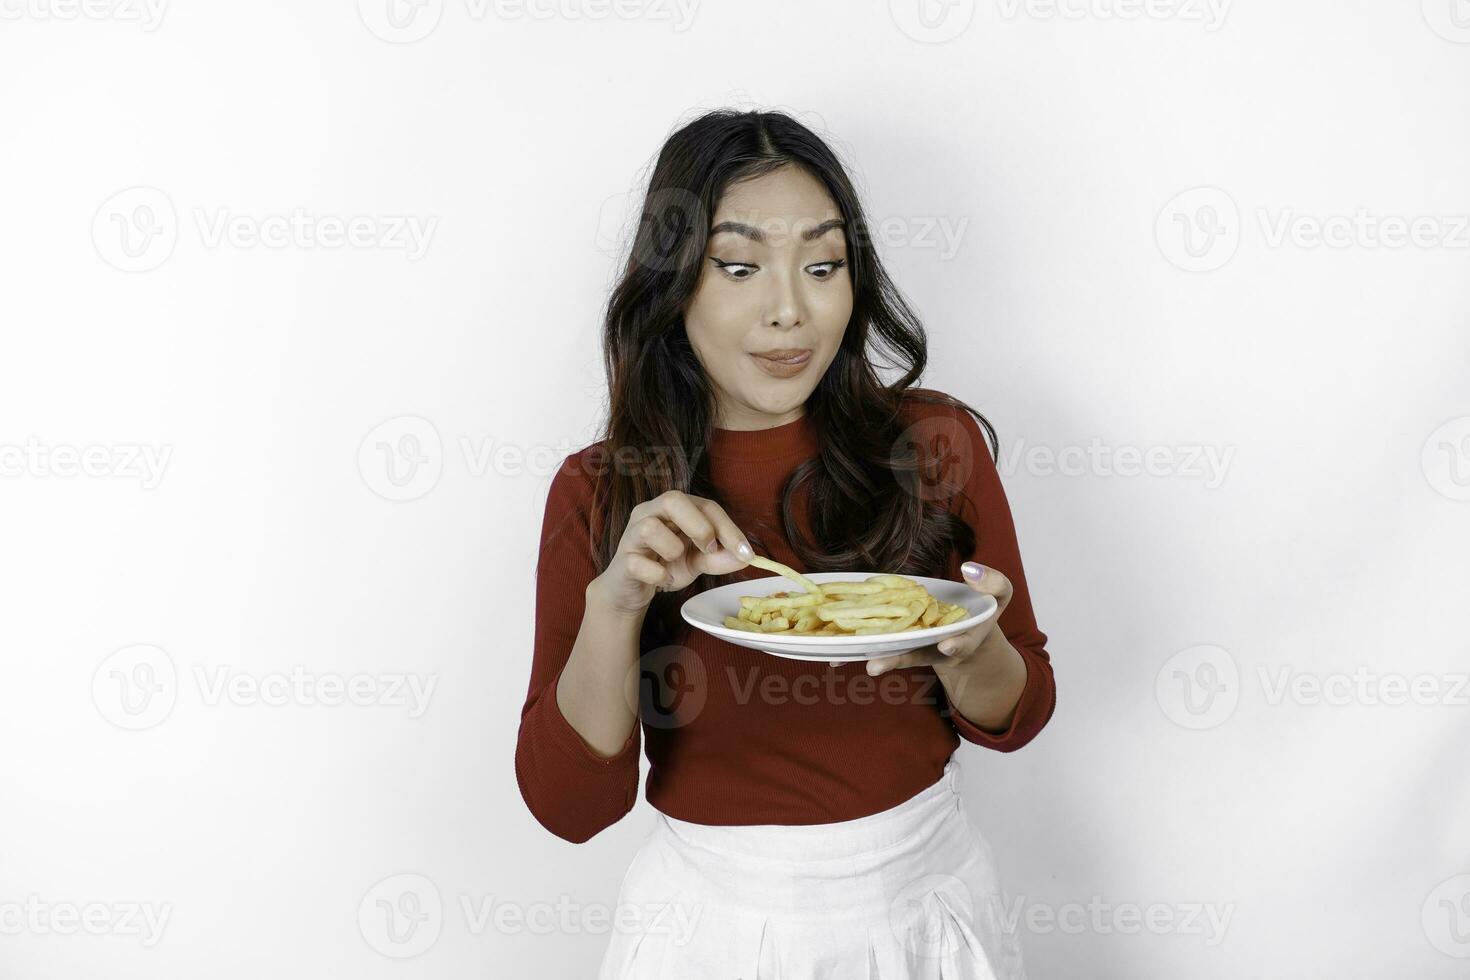 jong hongerig vrouw vervelend gewoontjes kleren houden een bord met snel voedsel Frans Patat aardappel geïsoleerd Aan wit achtergrond studio portret. mensen levensstijl voedsel concept foto